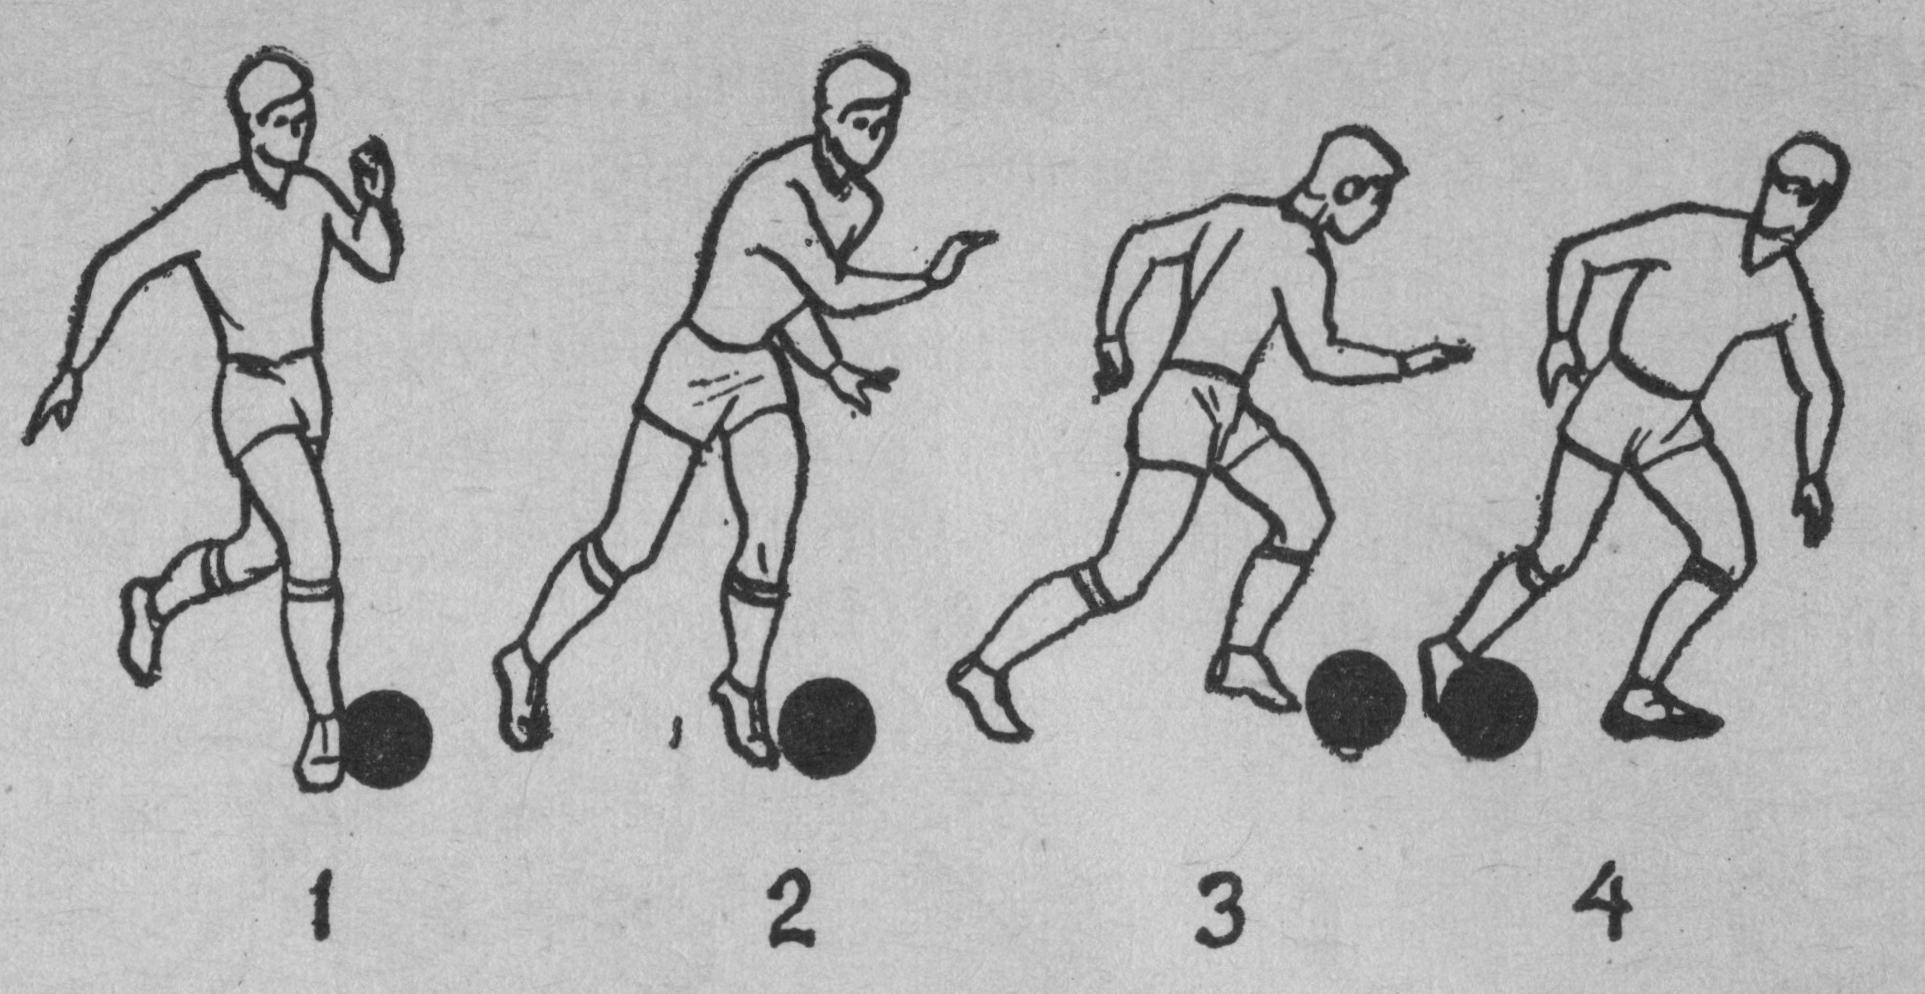 Техника удара в футболе. Ведение мяча ногой в футболе. Техники ведения мяча ногой в футболе. Приемы ведения мяча в футболе. Упражнения на технику ведения мяча в футболе.